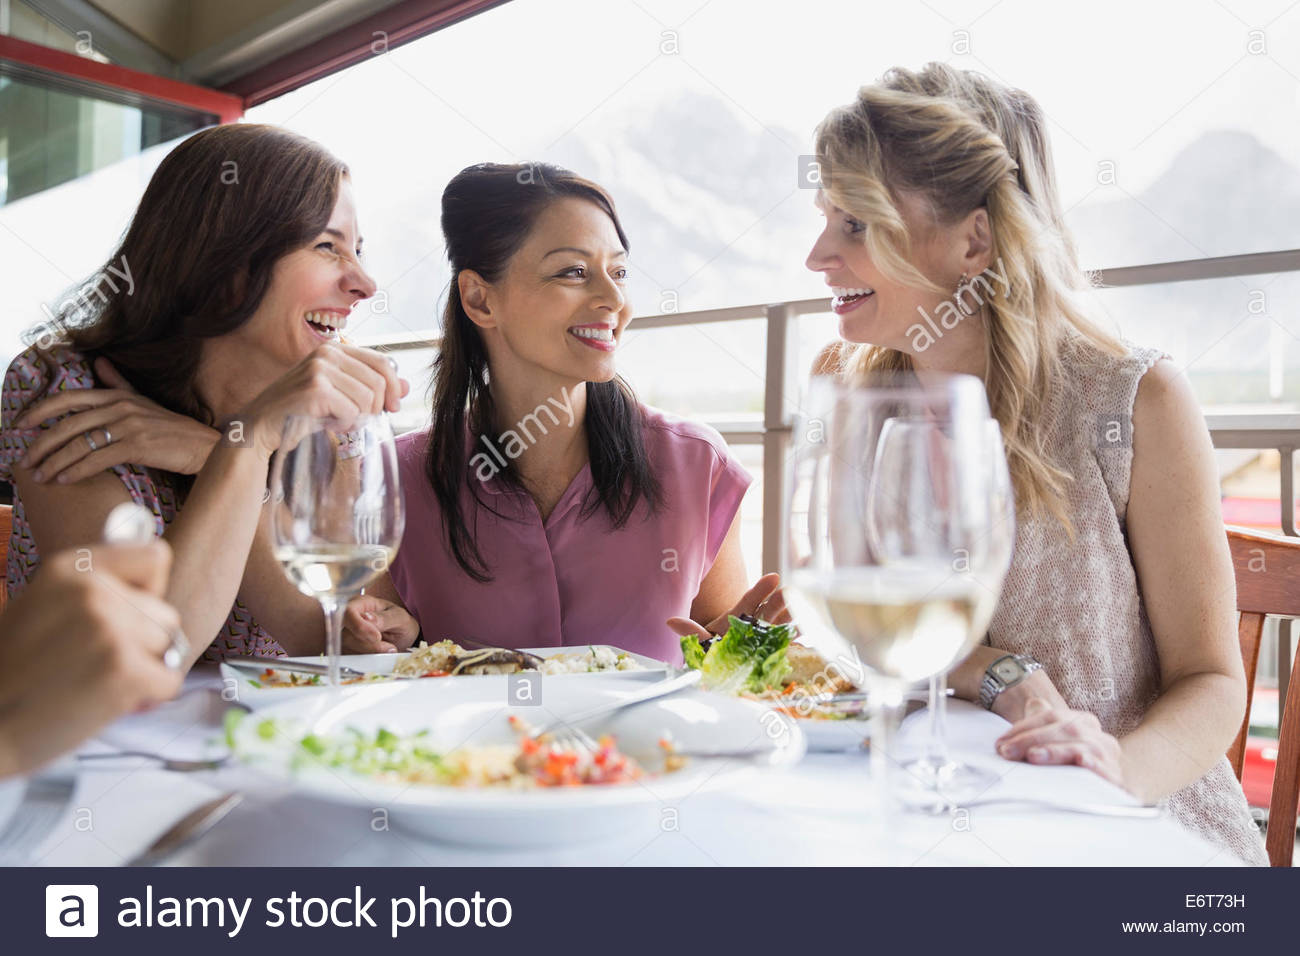 Las mujeres comiendo juntos en un restaurante Foto de stock